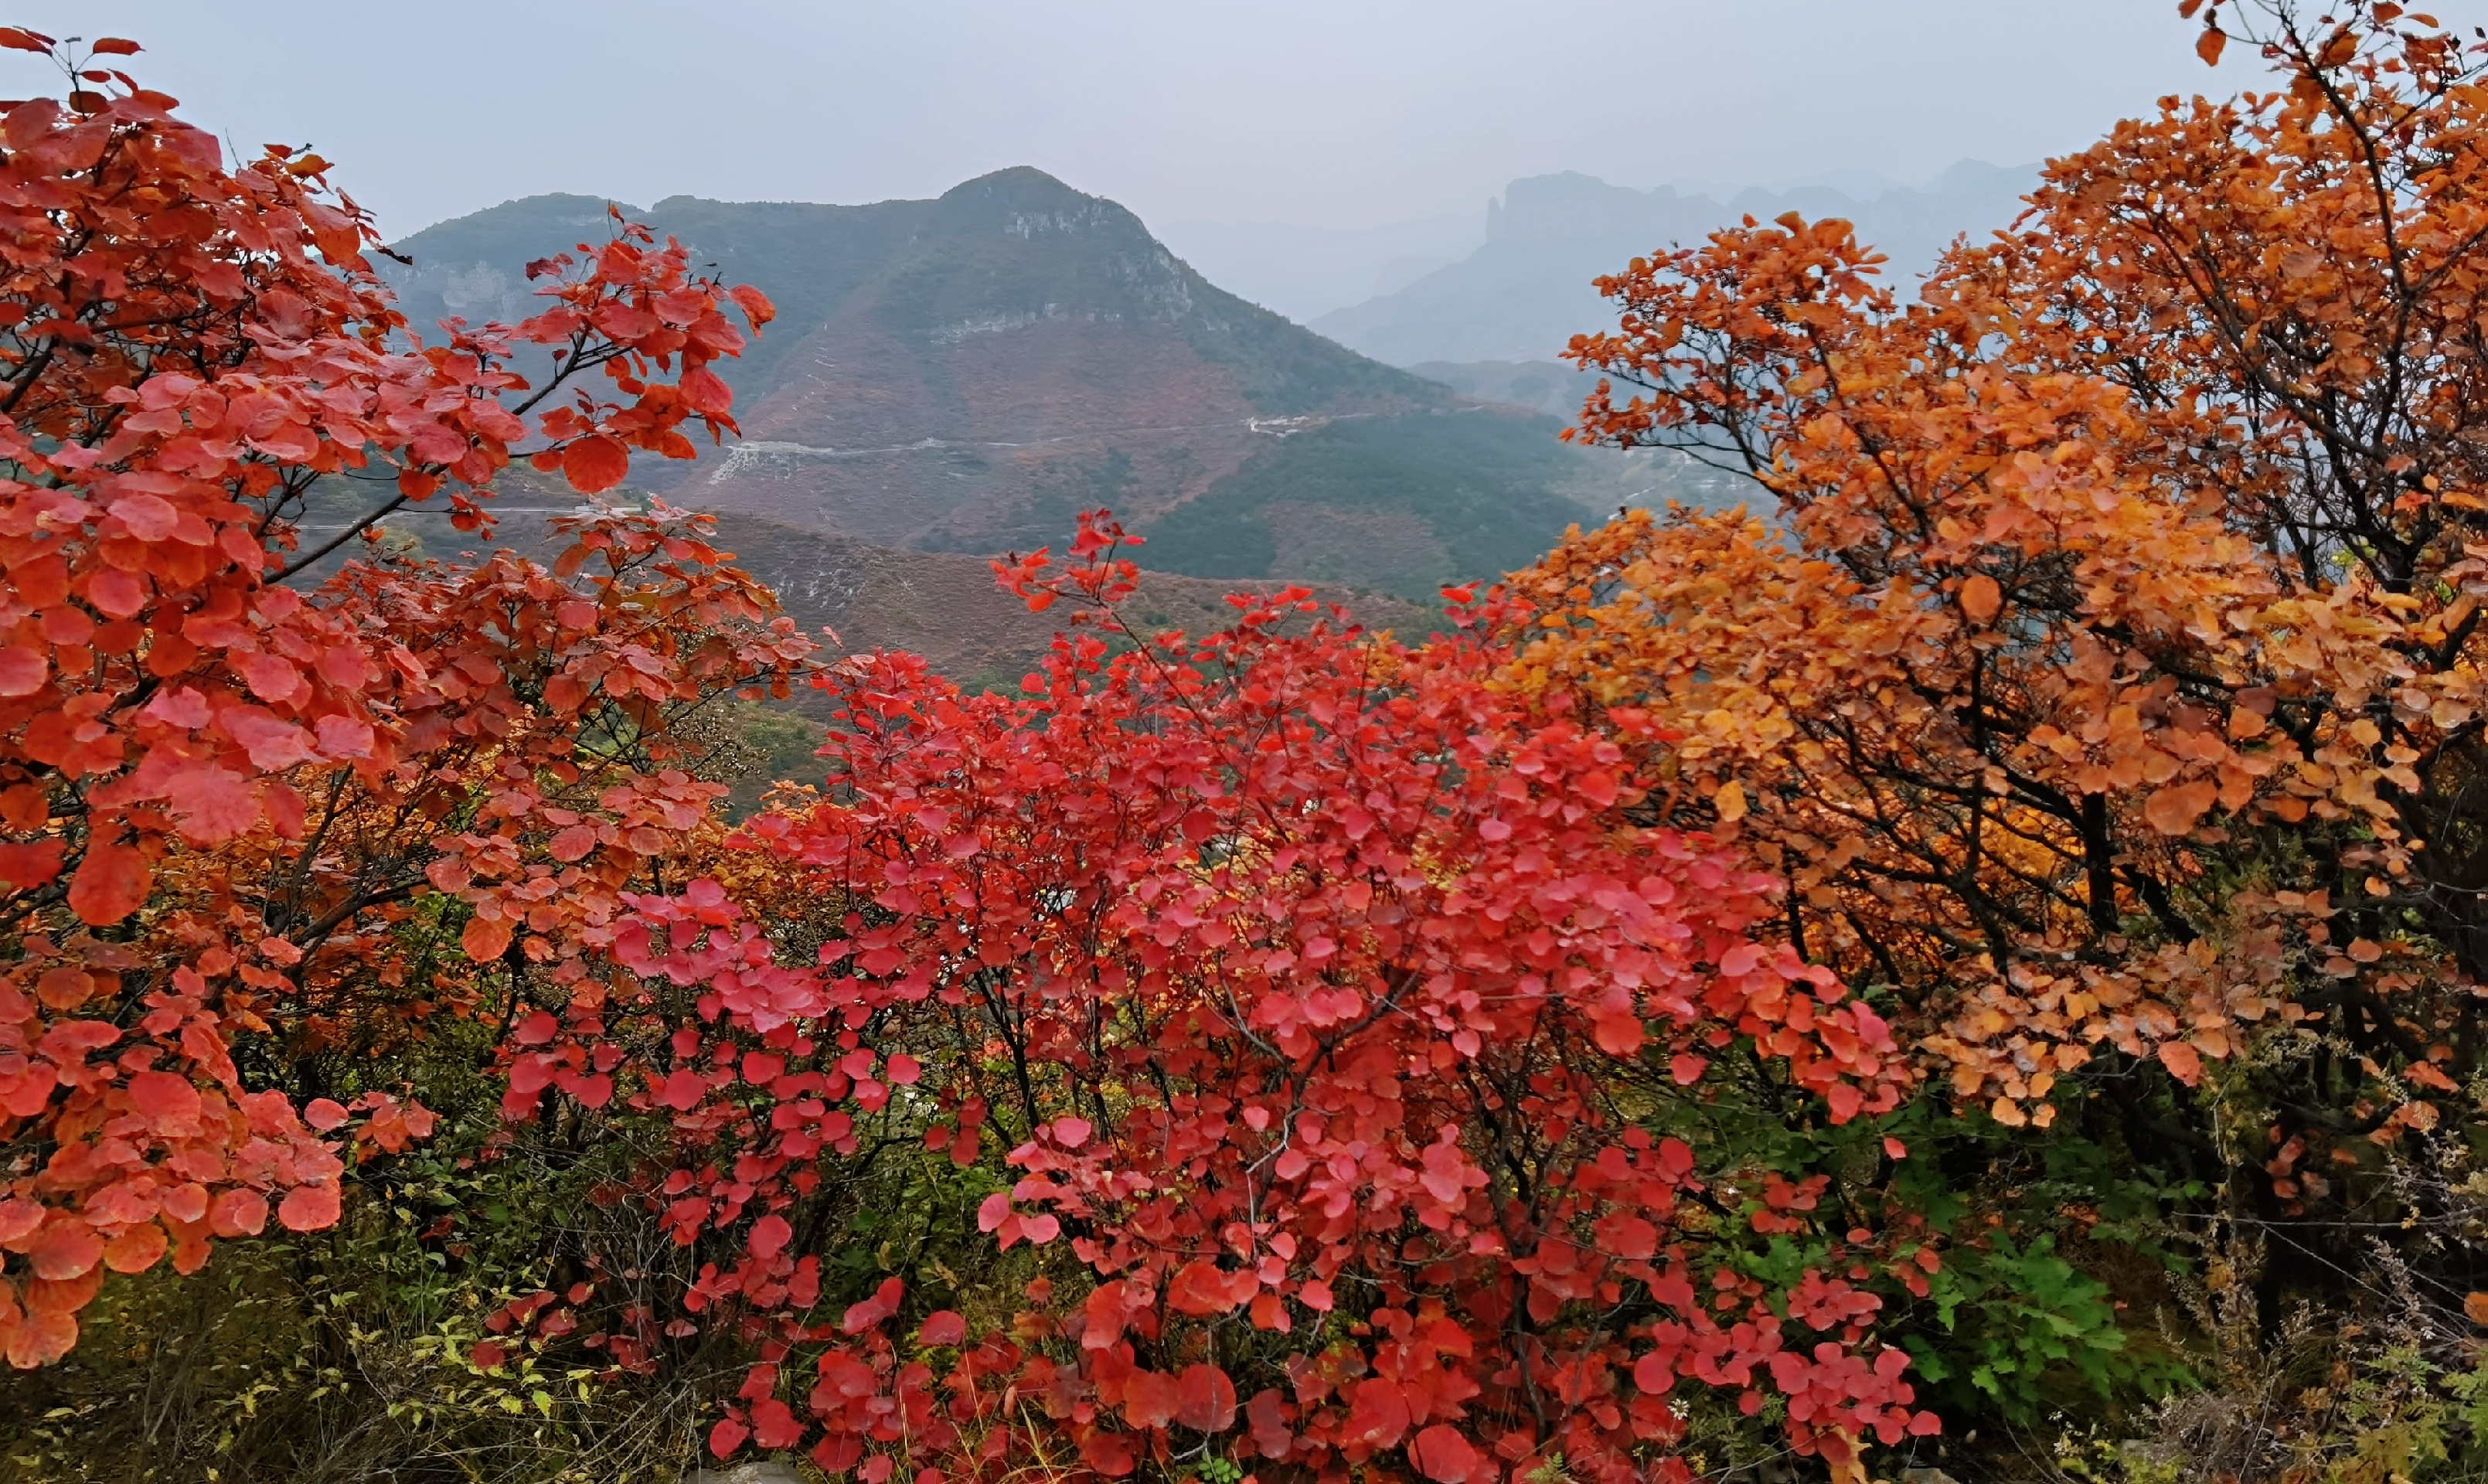 四方山景区知道秋色 慕名而来 满山遍野红色 视觉盛宴